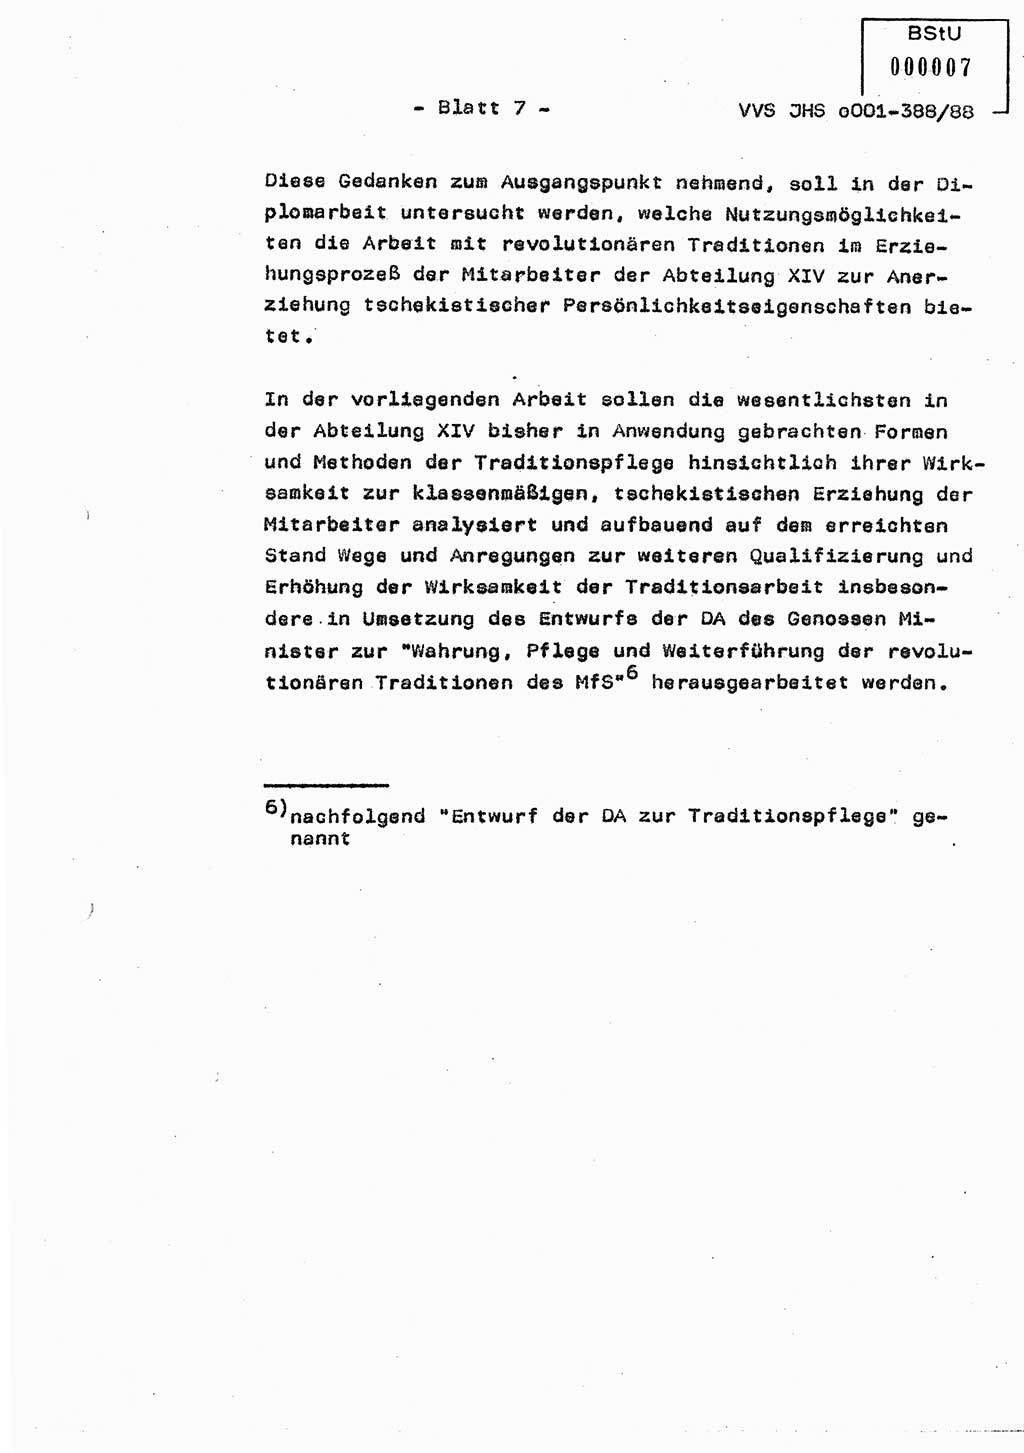 Diplomarbeit Hauptmann Heinz Brixel (Abt. ⅩⅣ), Ministerium für Staatssicherheit (MfS) [Deutsche Demokratische Republik (DDR)], Juristische Hochschule (JHS), Vertrauliche Verschlußsache (VVS) o001-388/88, Potsdam 1988, Blatt 7 (Dipl.-Arb. MfS DDR JHS VVS o001-388/88 1988, Bl. 7)